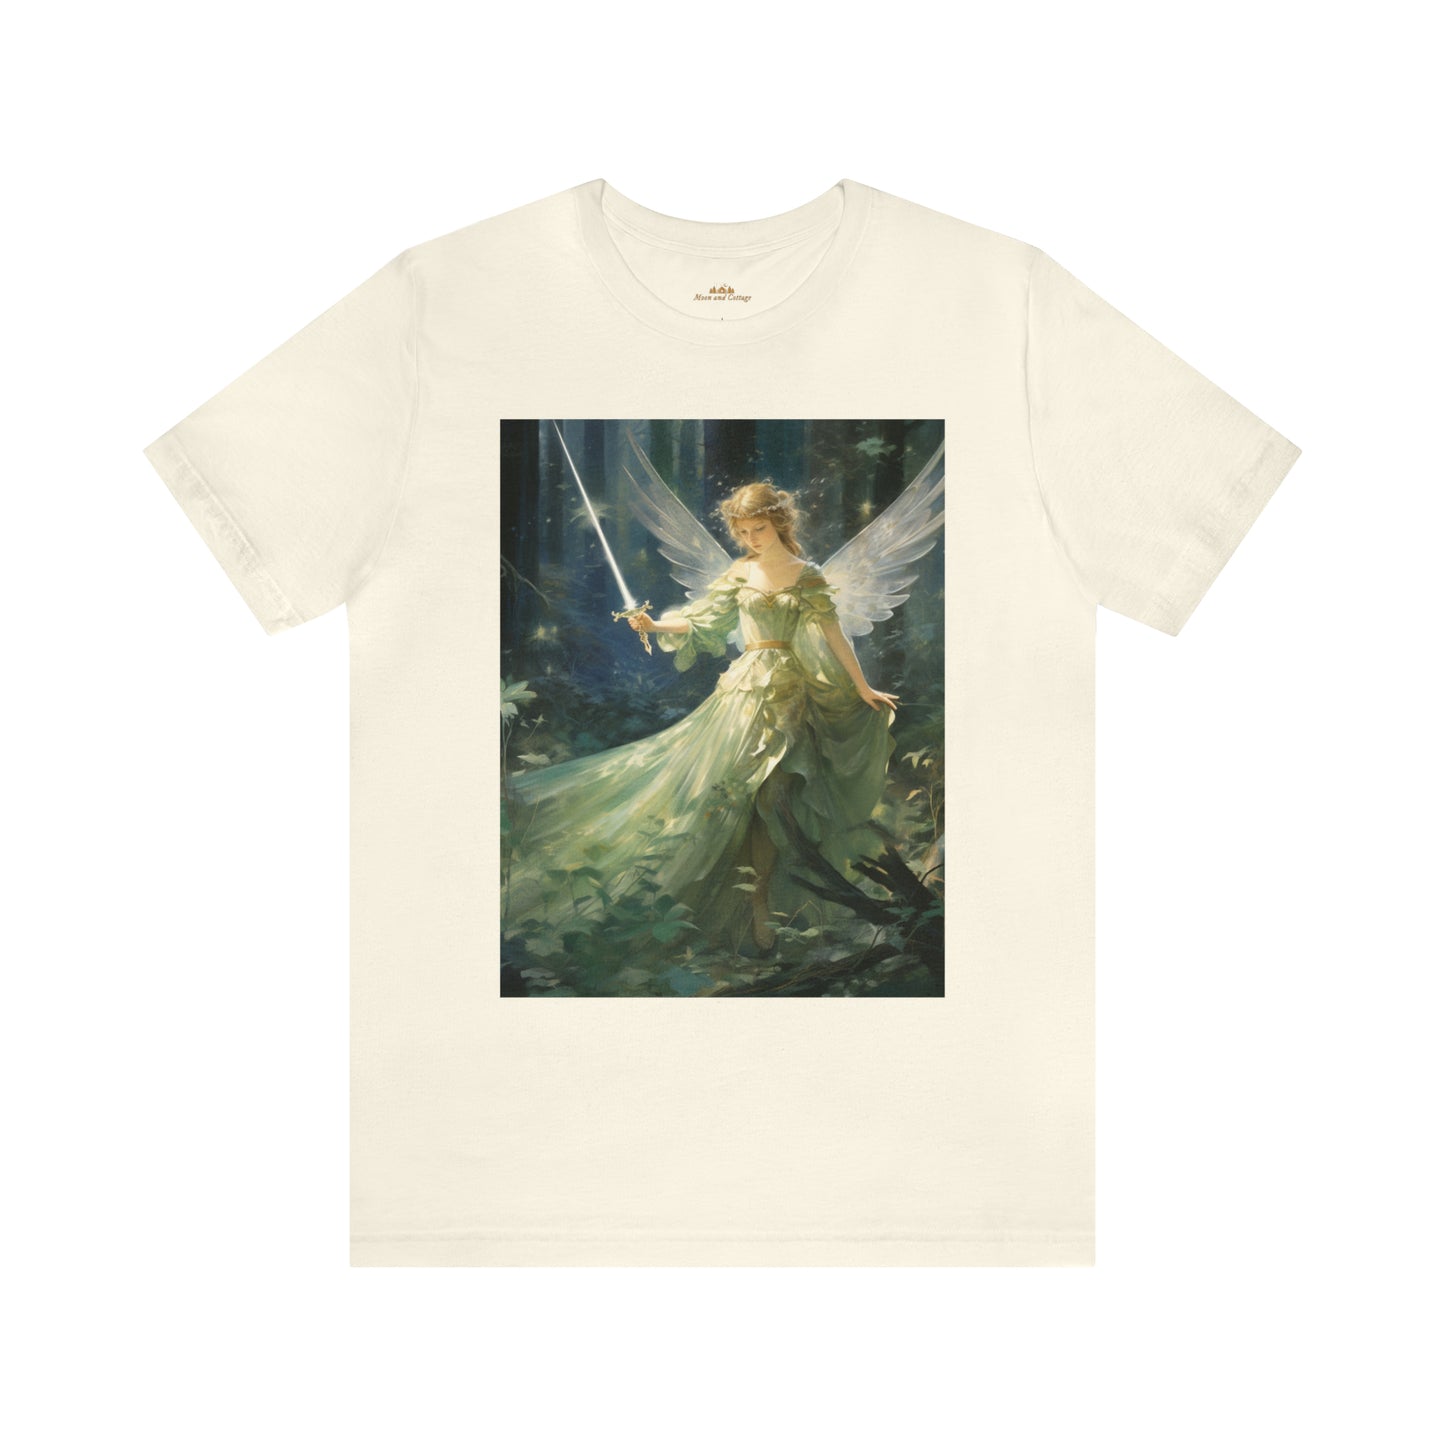 Cottagecore Fairy Holding Sword Printed T-Shirt - Fairycore Grunge Crewneck & Short Sleeve Shirt - Boho Aesthetic Unisex Tee